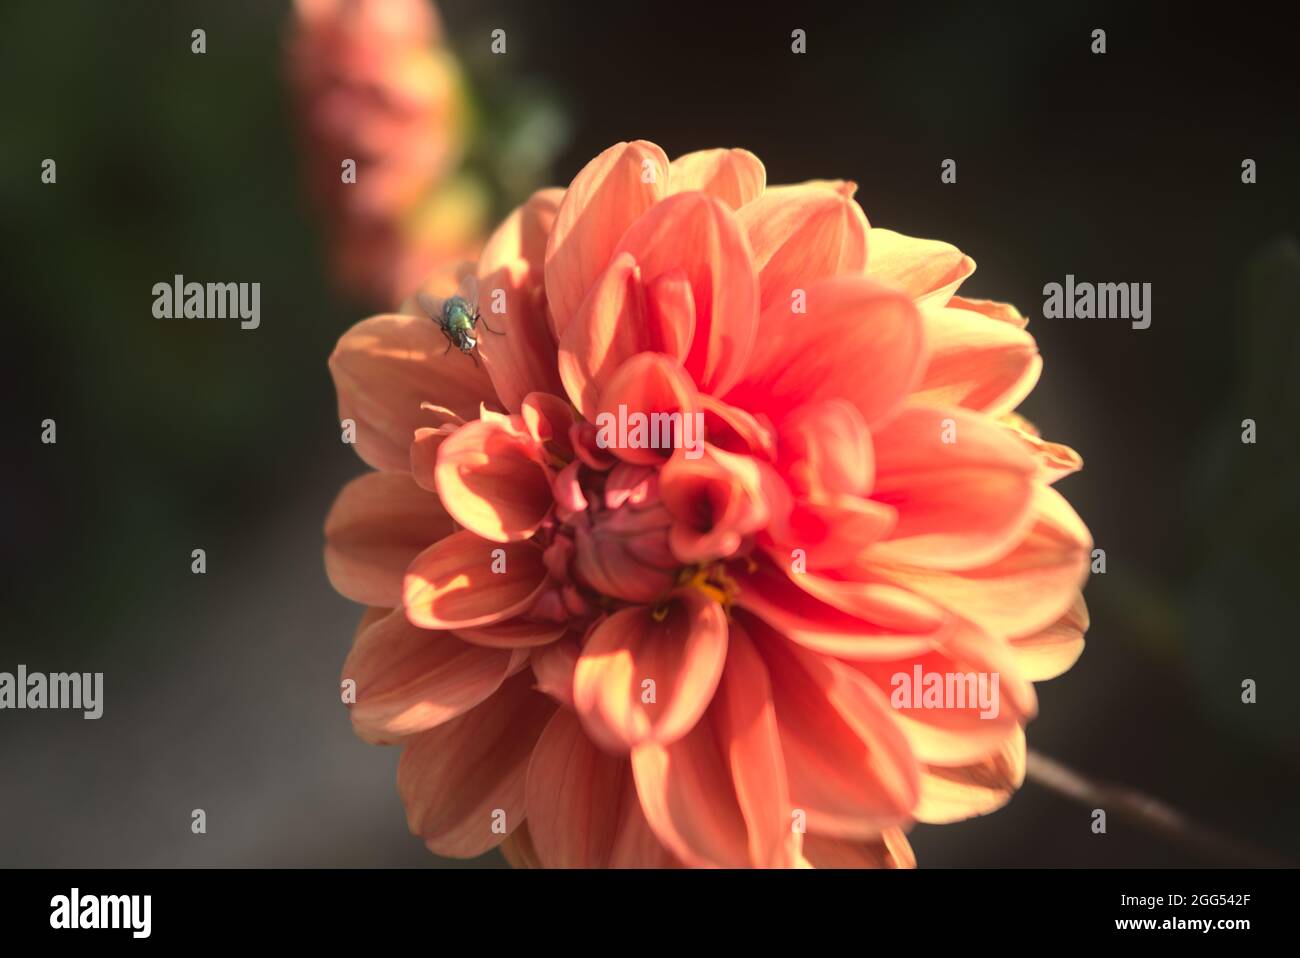 detail of orange dahlia flower Stock Photo